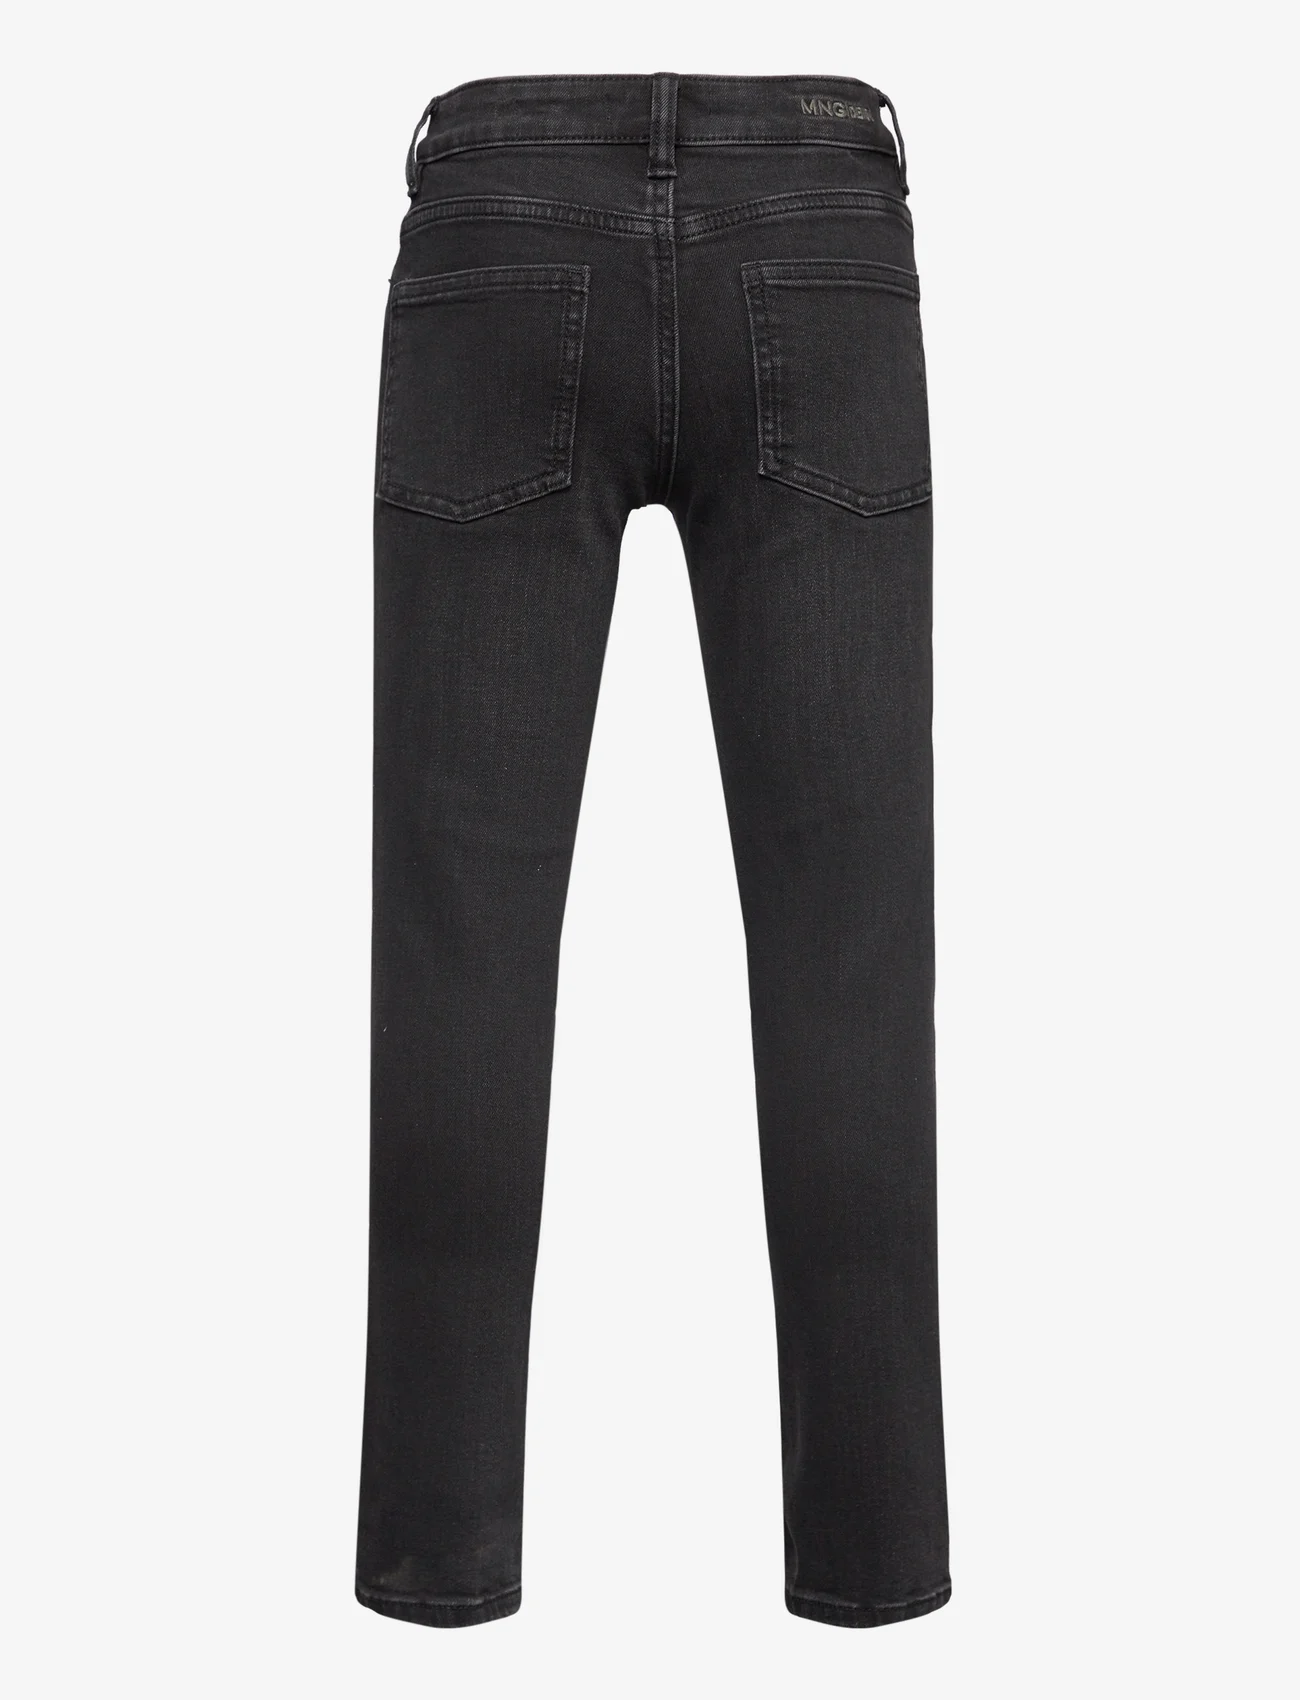 Mango - Slim-fit jeans - skinny jeans - open grey - 1